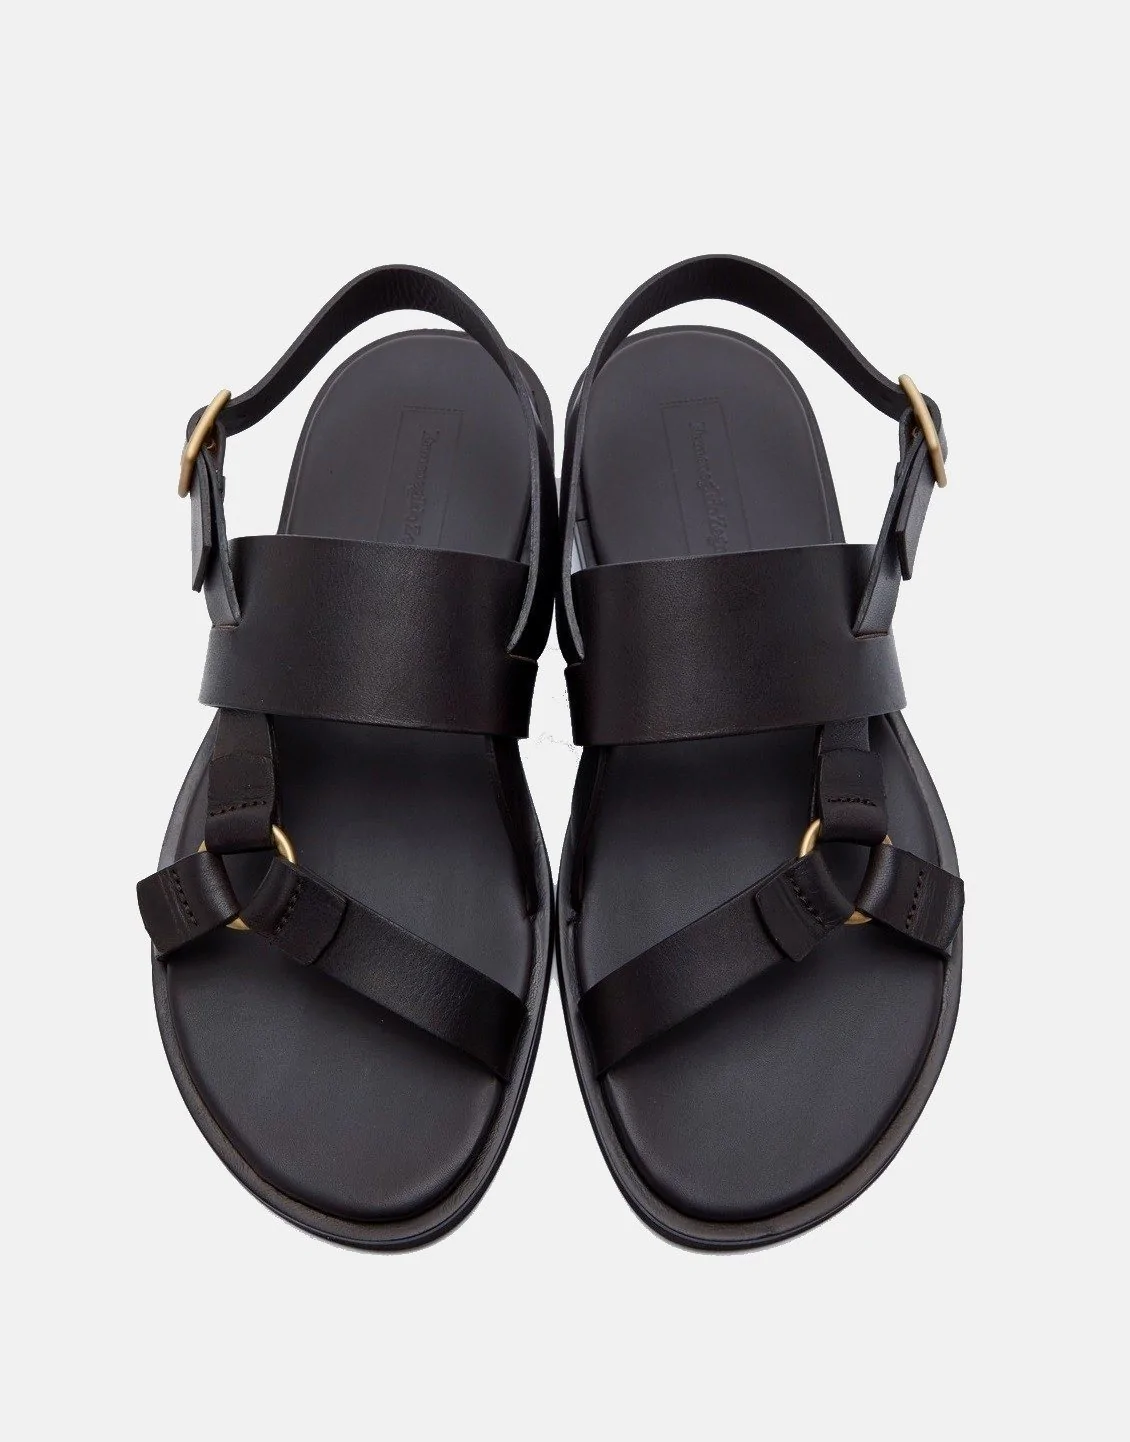 Ermenegildo Zegna Men's Black Calfskin Sandals